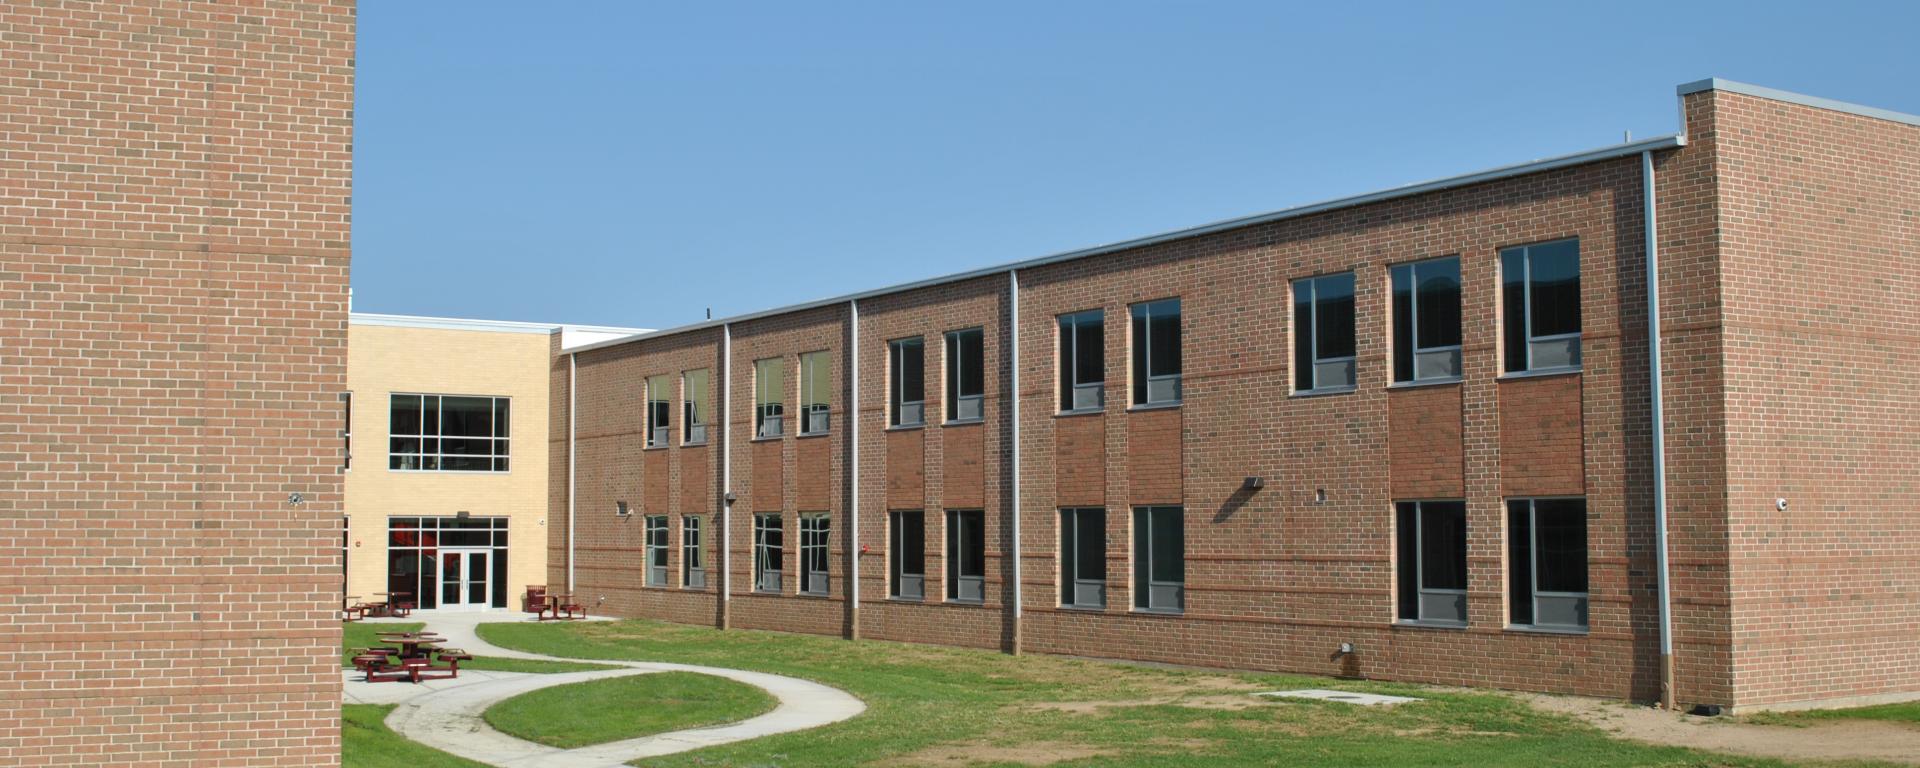 courtyard of school building